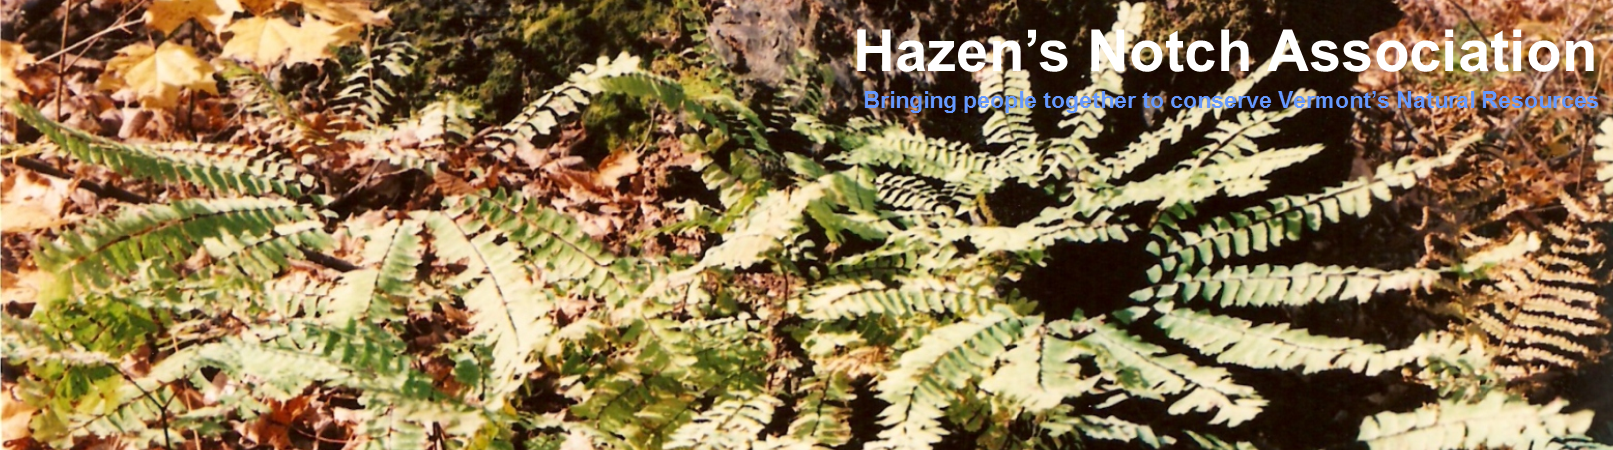 Hazen's Notch Association